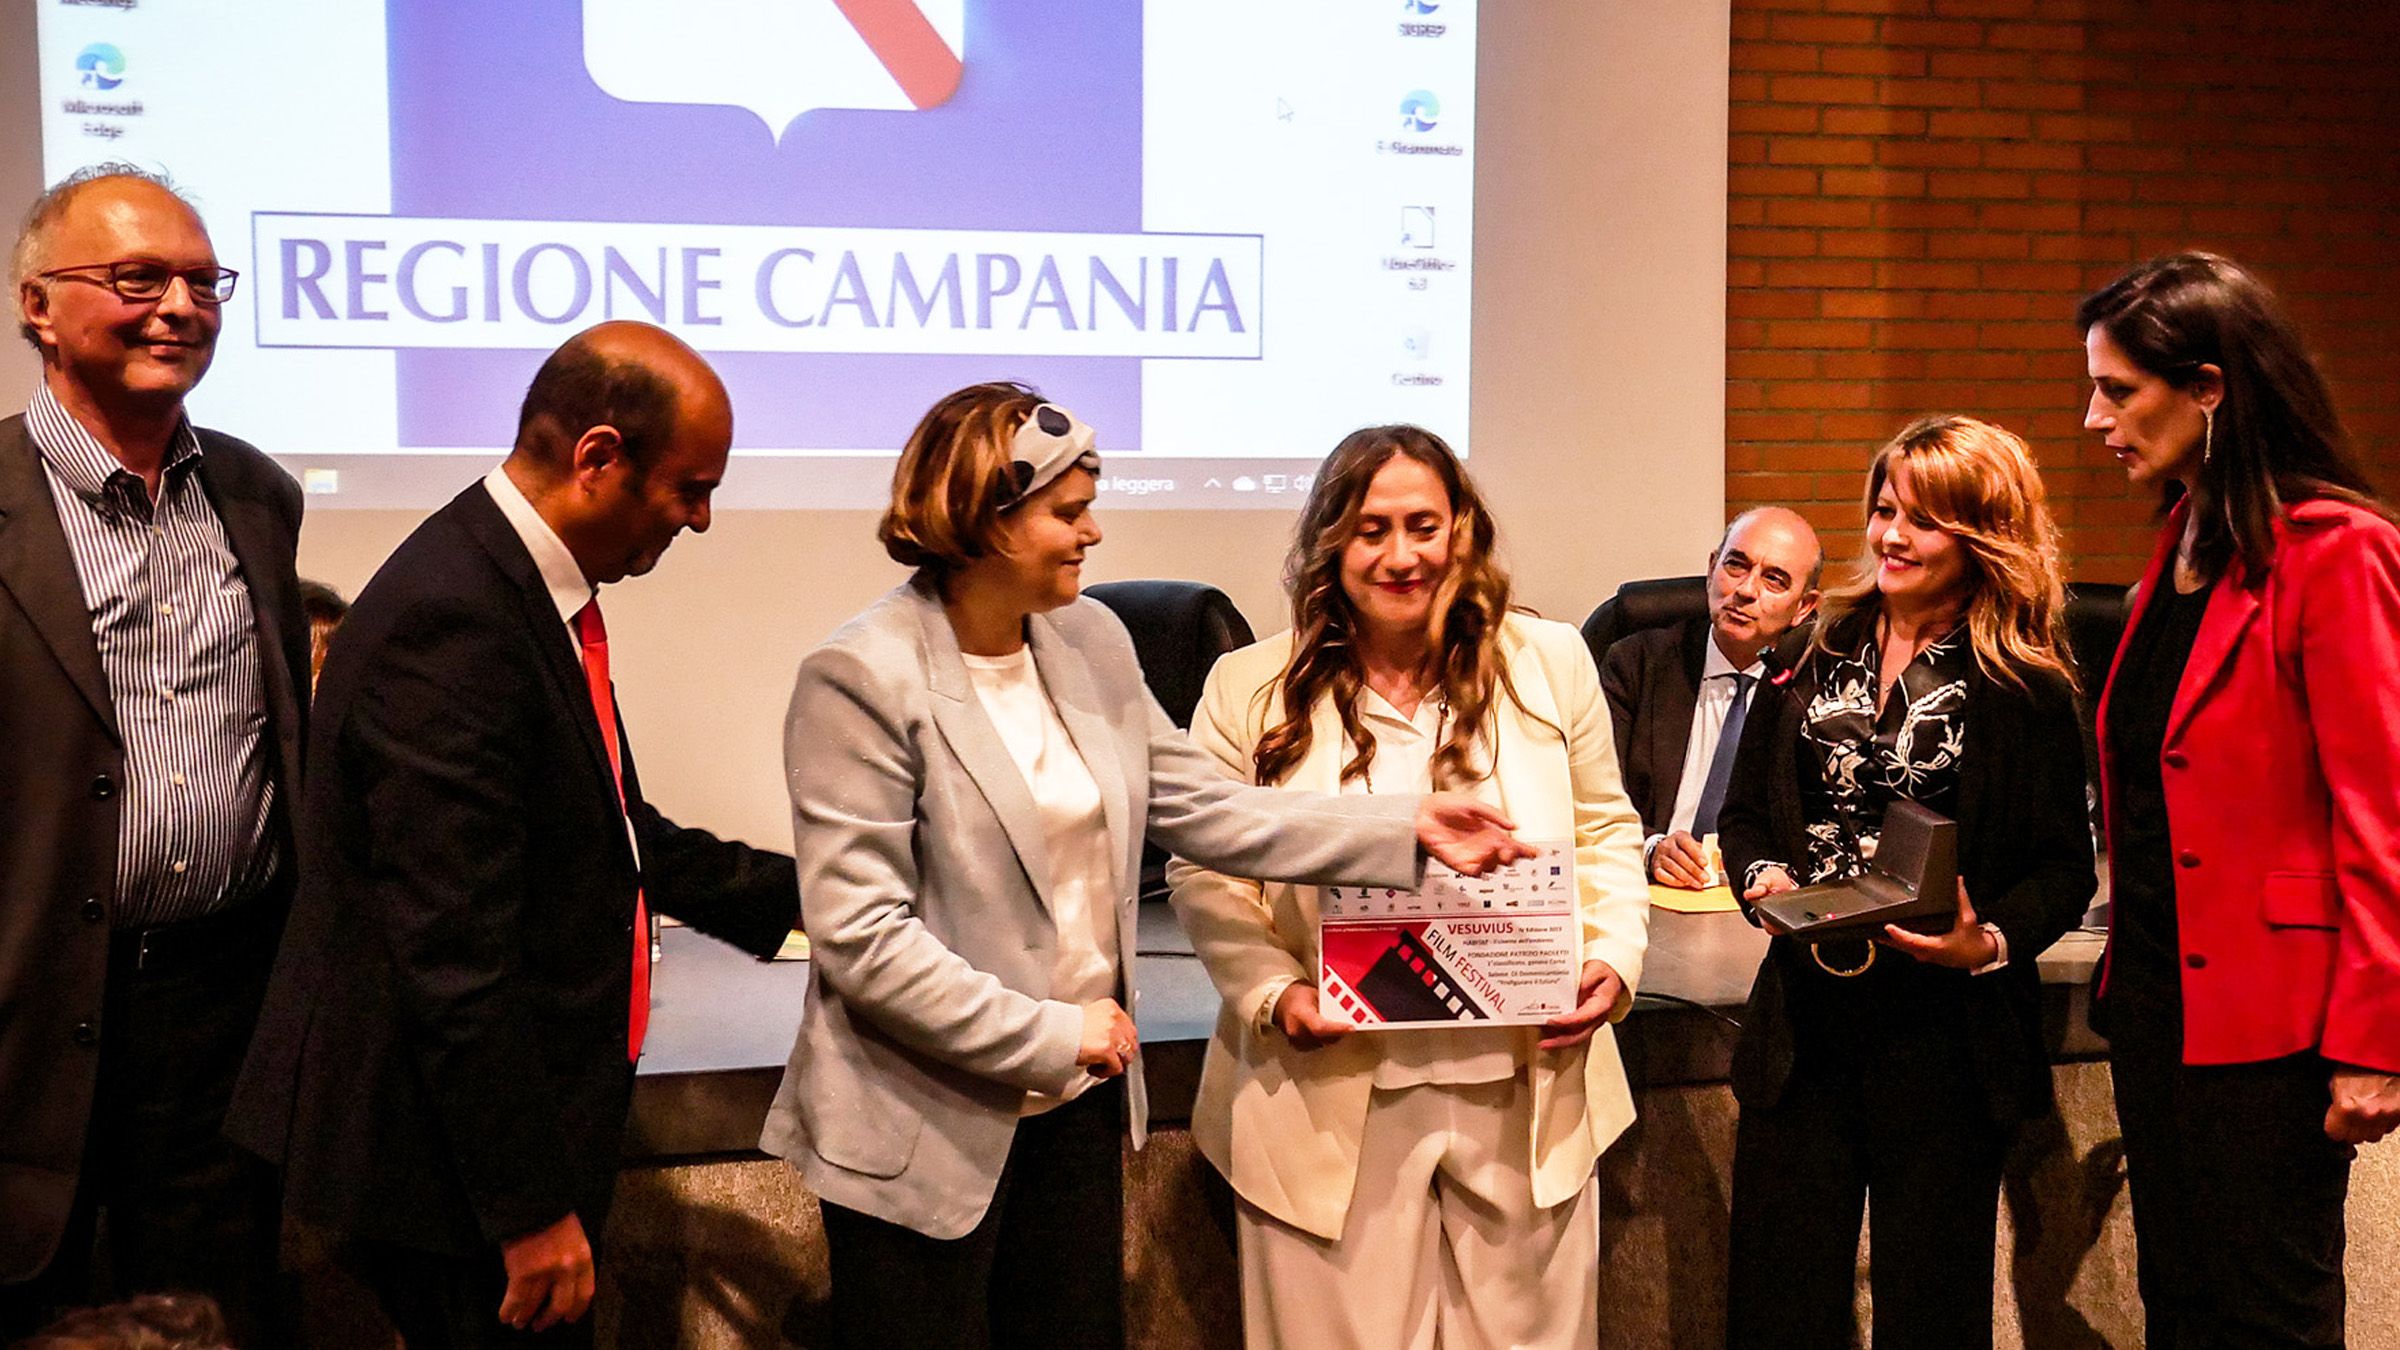 Fondazione Paoletti vince al Vesuvius Film Festival